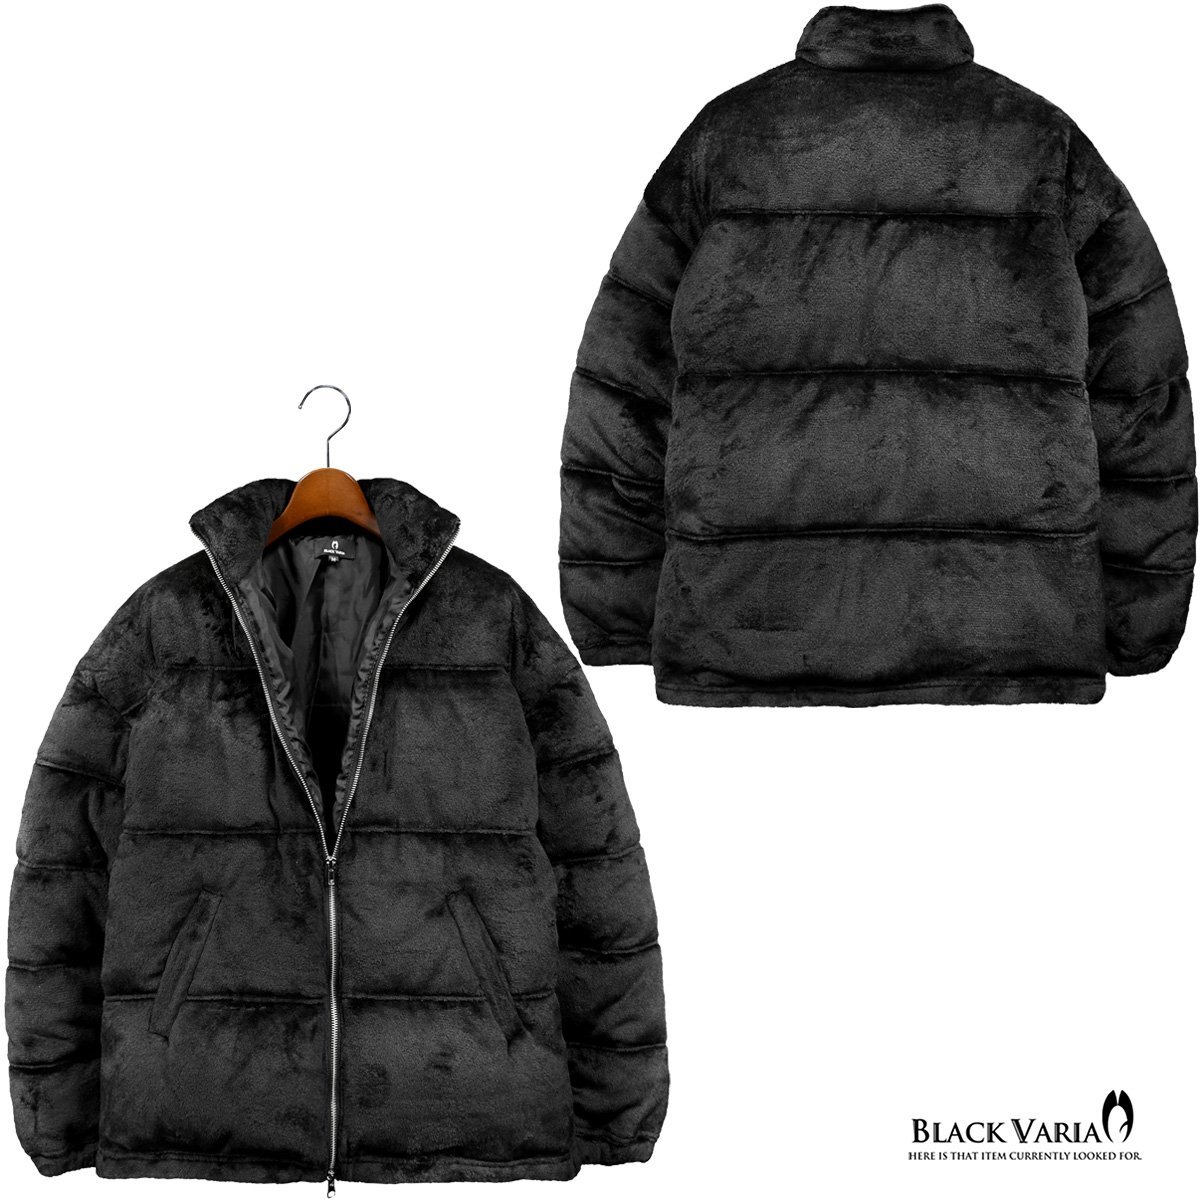 424007-20 BlackVaria ファーブルゾン 中綿ジャケット オーバーサイズ 無地 アウター パデッドジャケット メンズ(ブラック黒) XL ゆったり_画像3